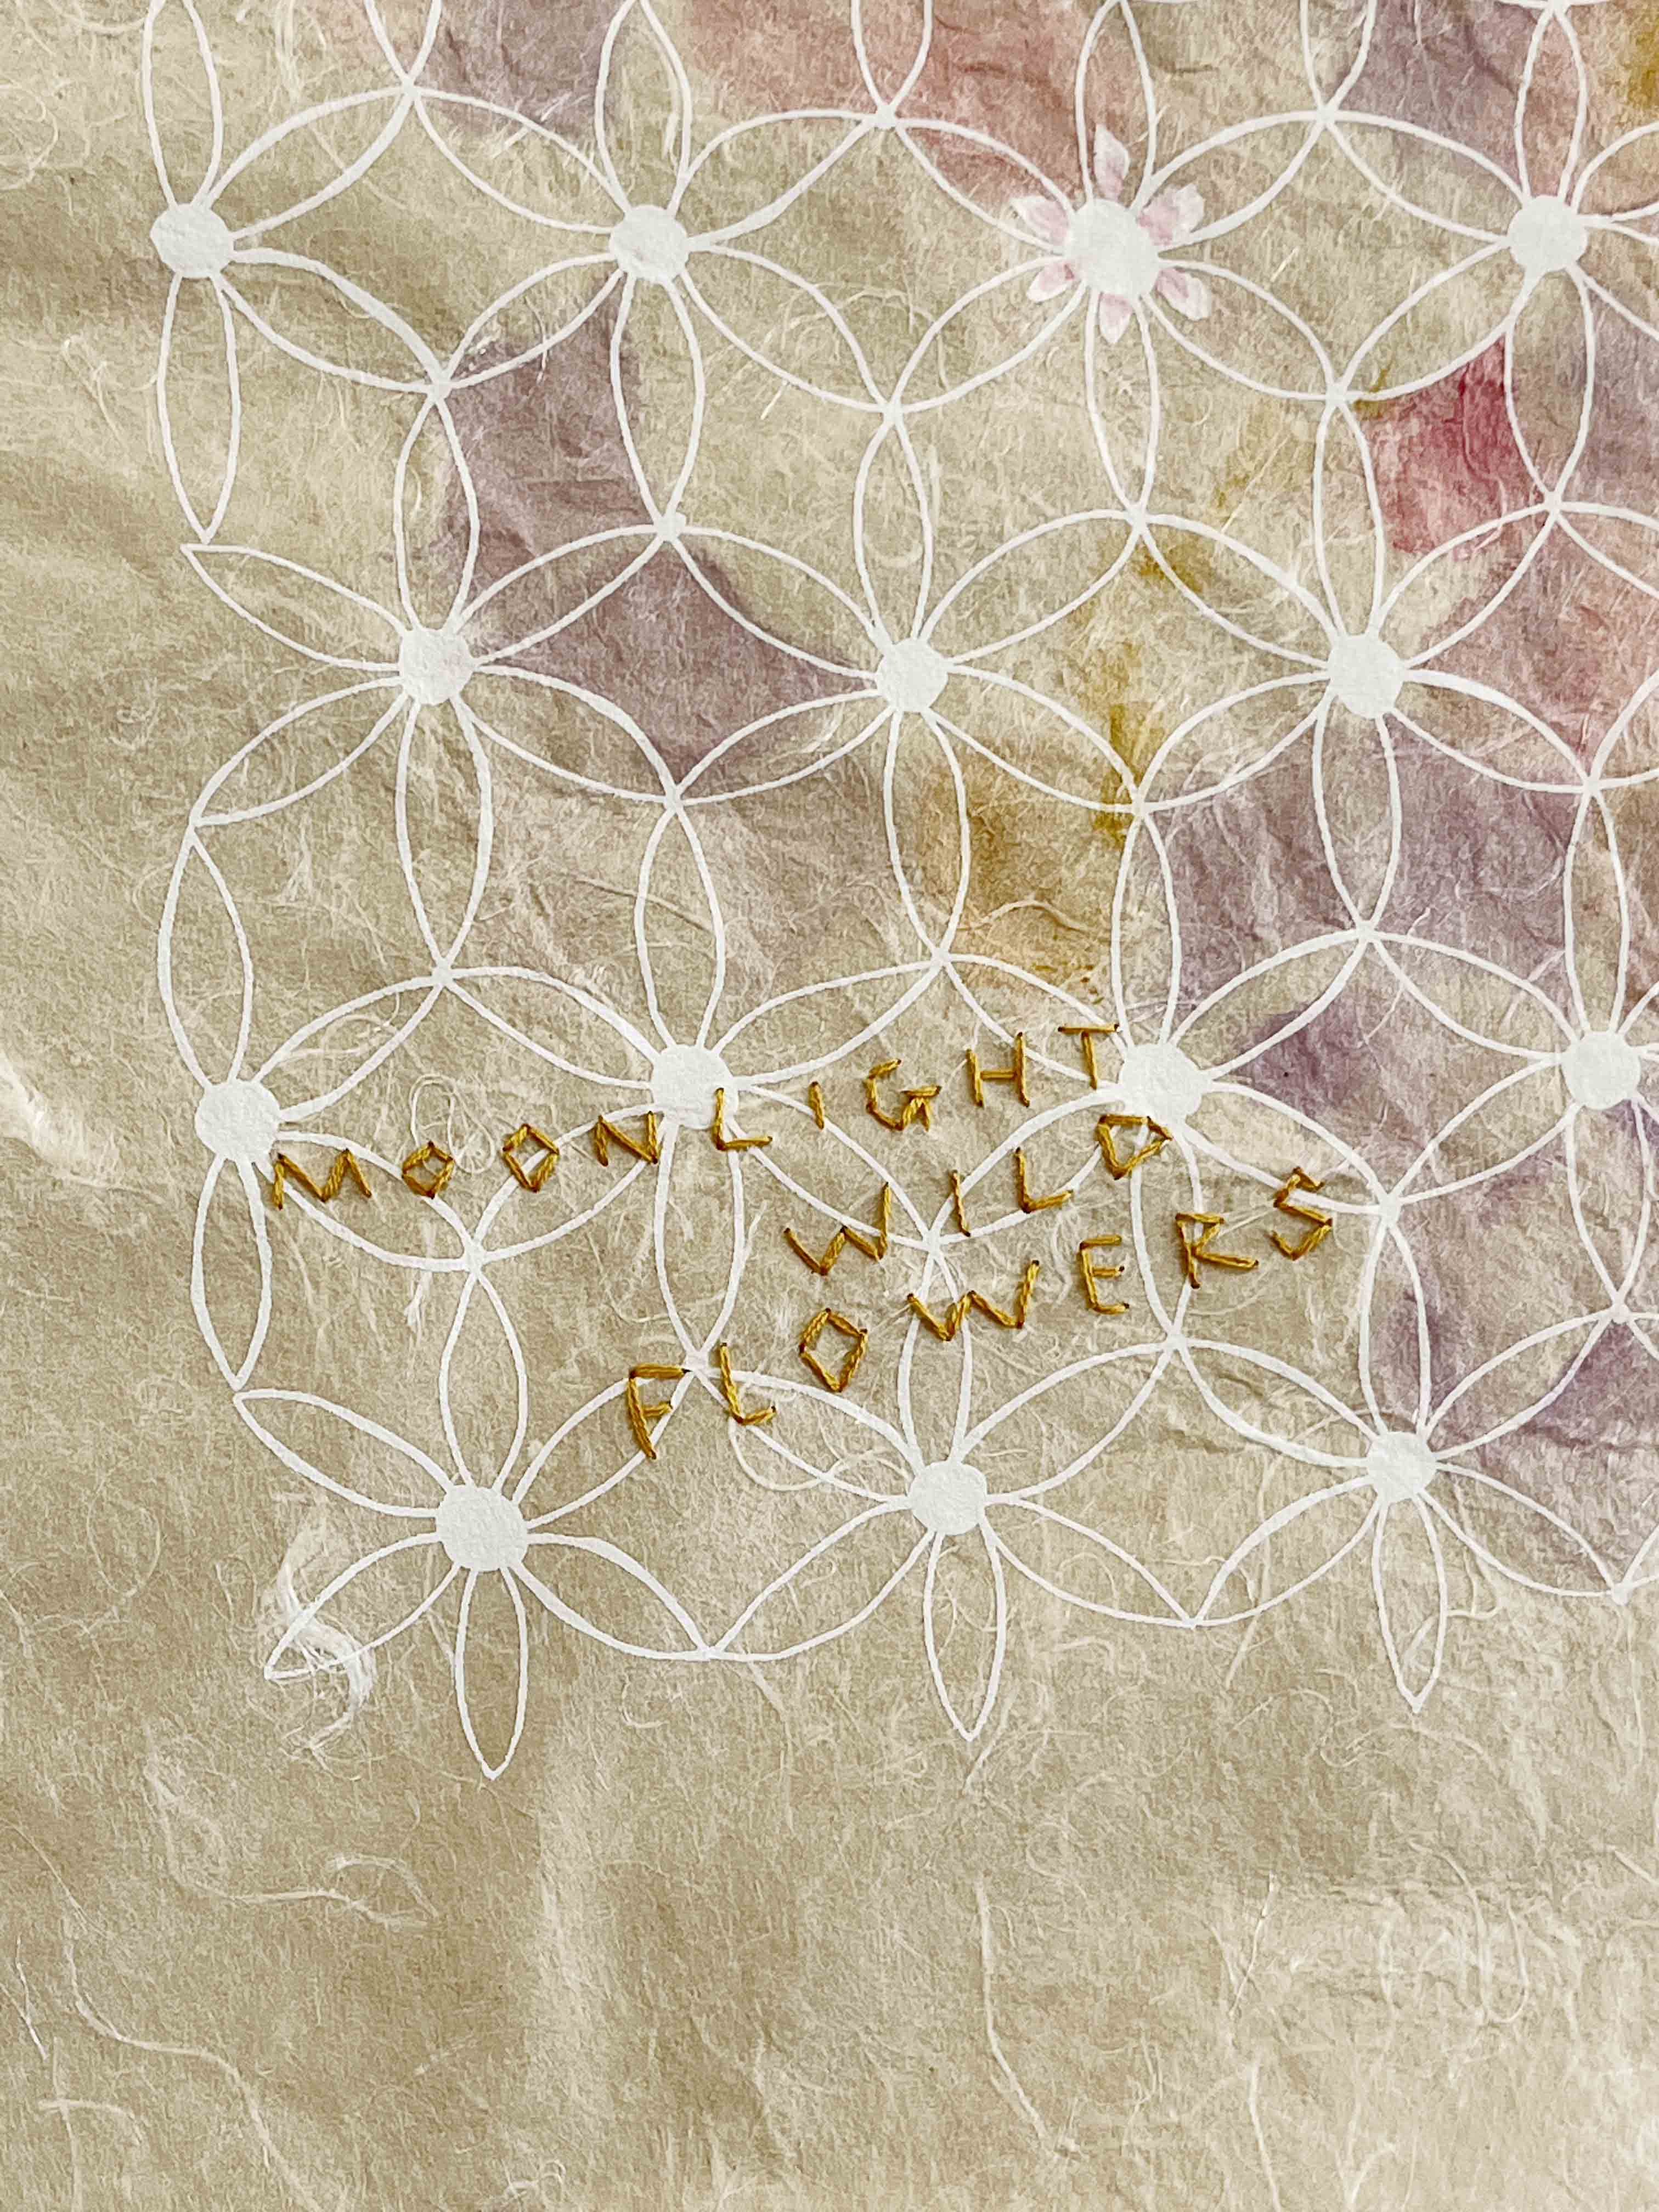 Wildflower Musings - "Moonlight Wild Flowers"